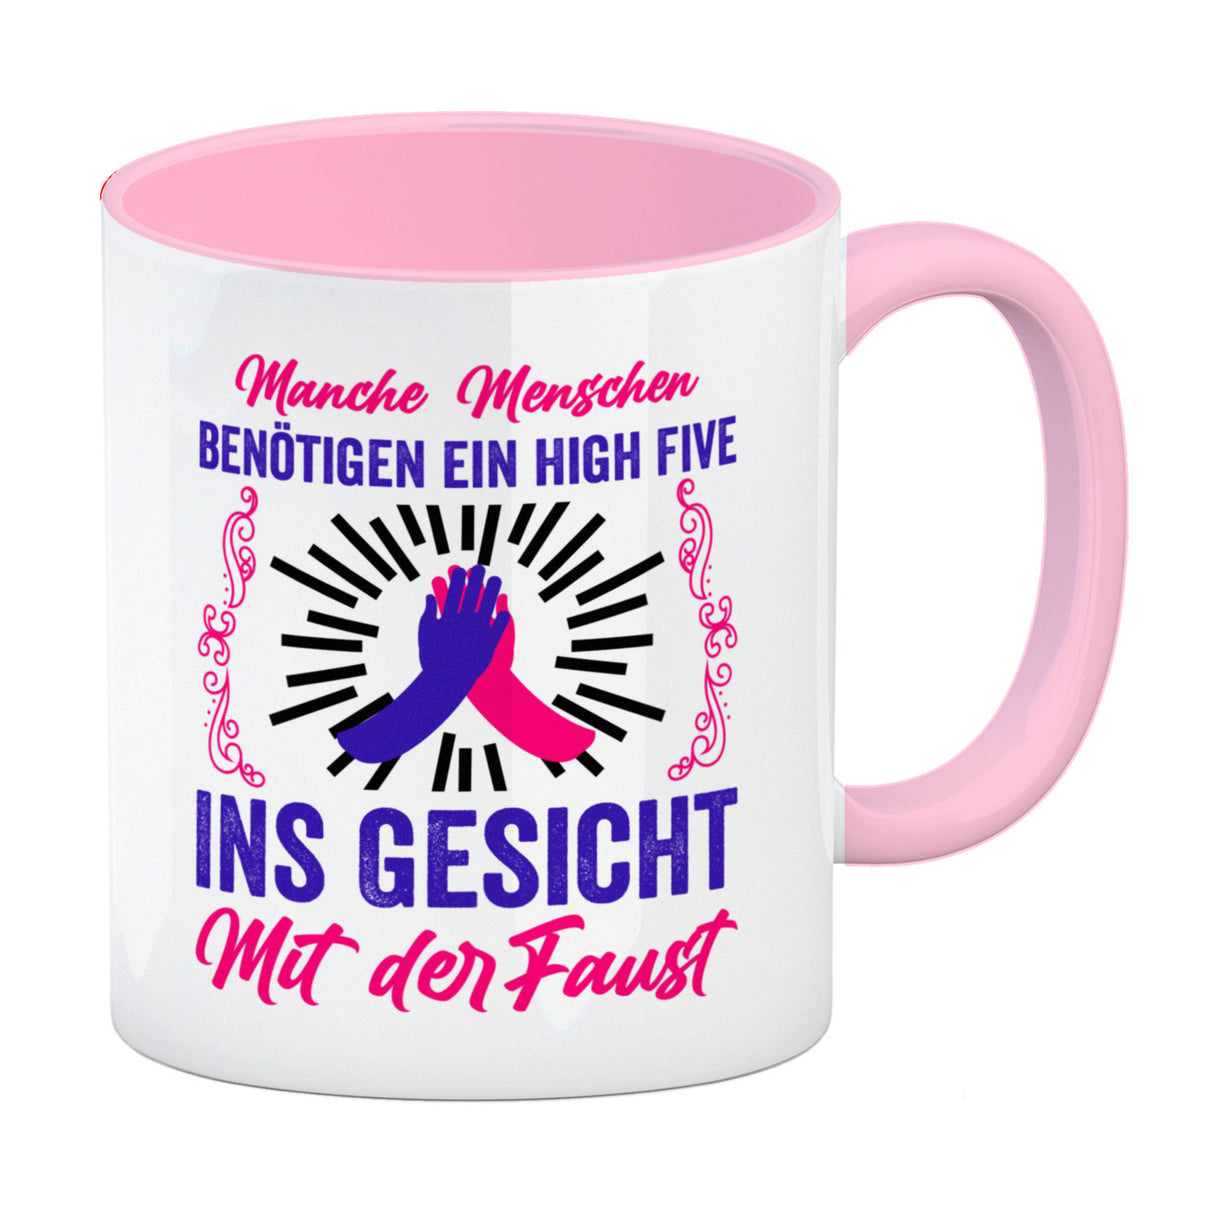 High Five Kaffeebecher mit Spruch: High Five ins Gesicht mit der Faust